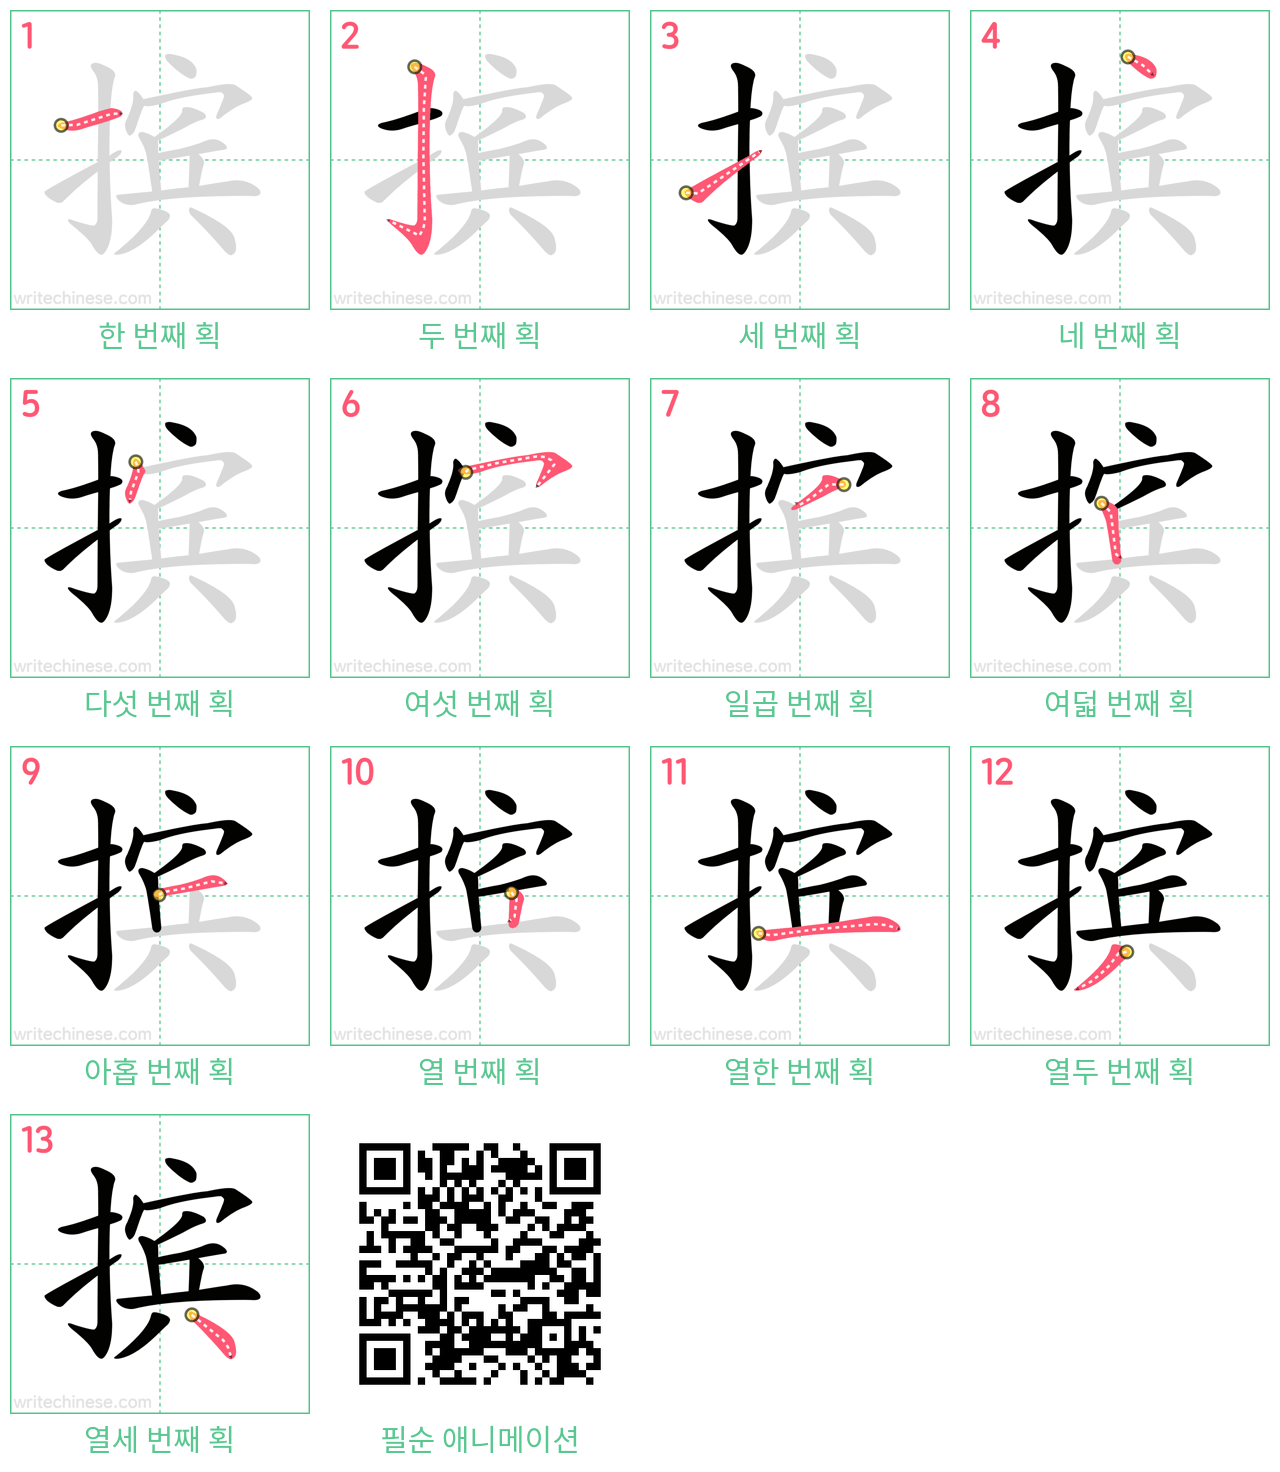 摈 step-by-step stroke order diagrams